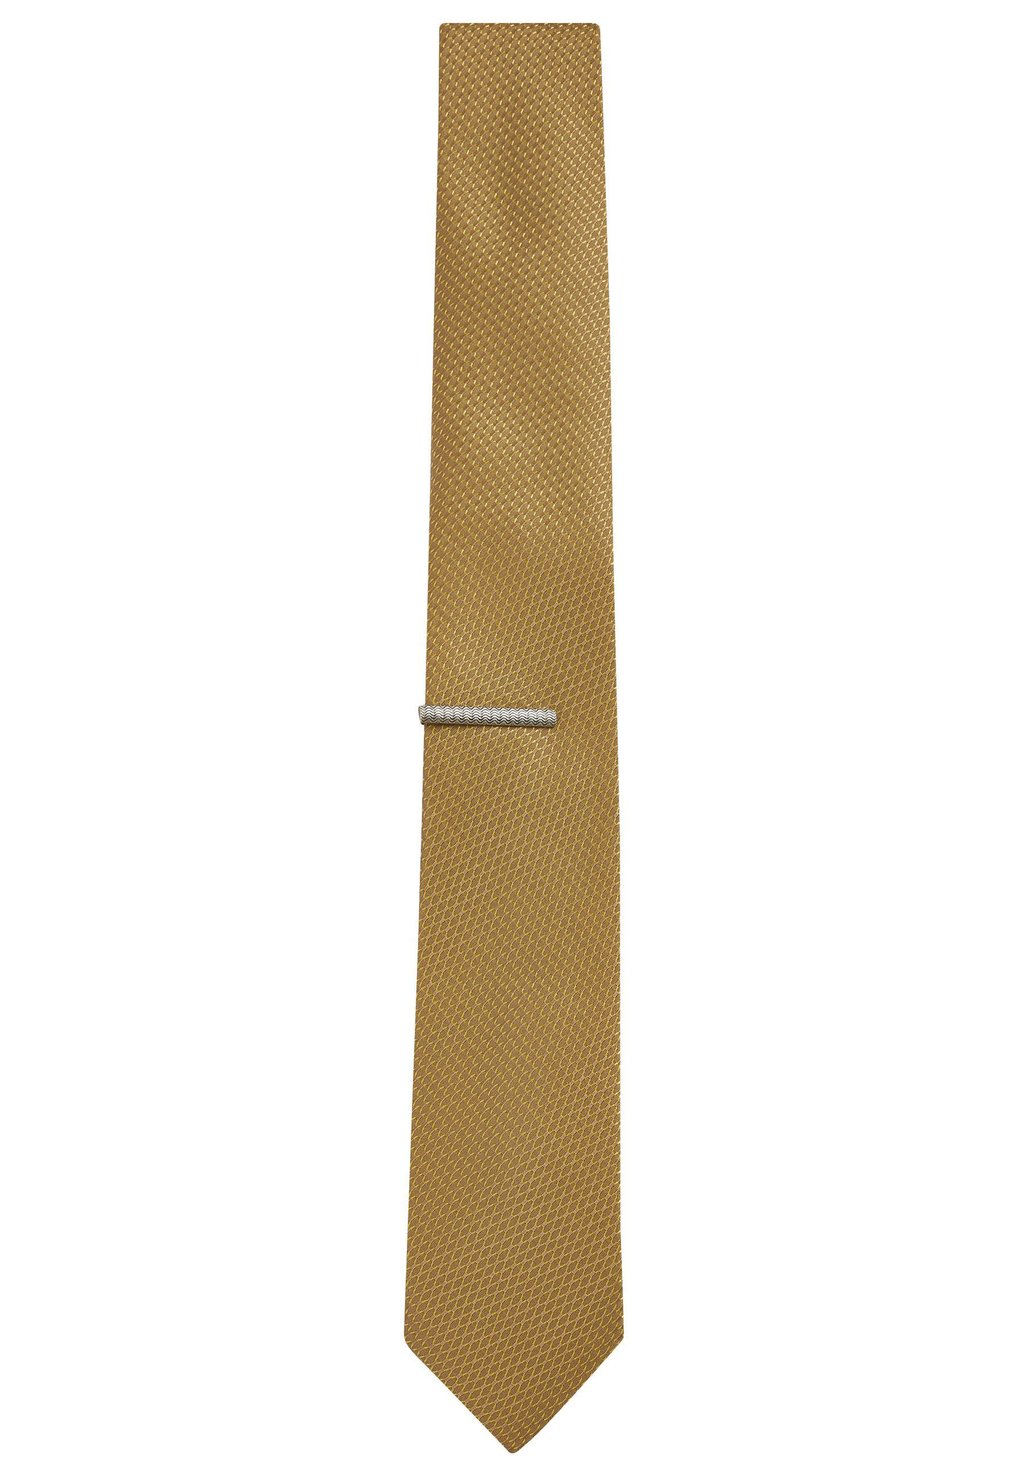 Галстук SLIM SET Next, цвет mustard yellow галстук slim set next цвет neutral brown